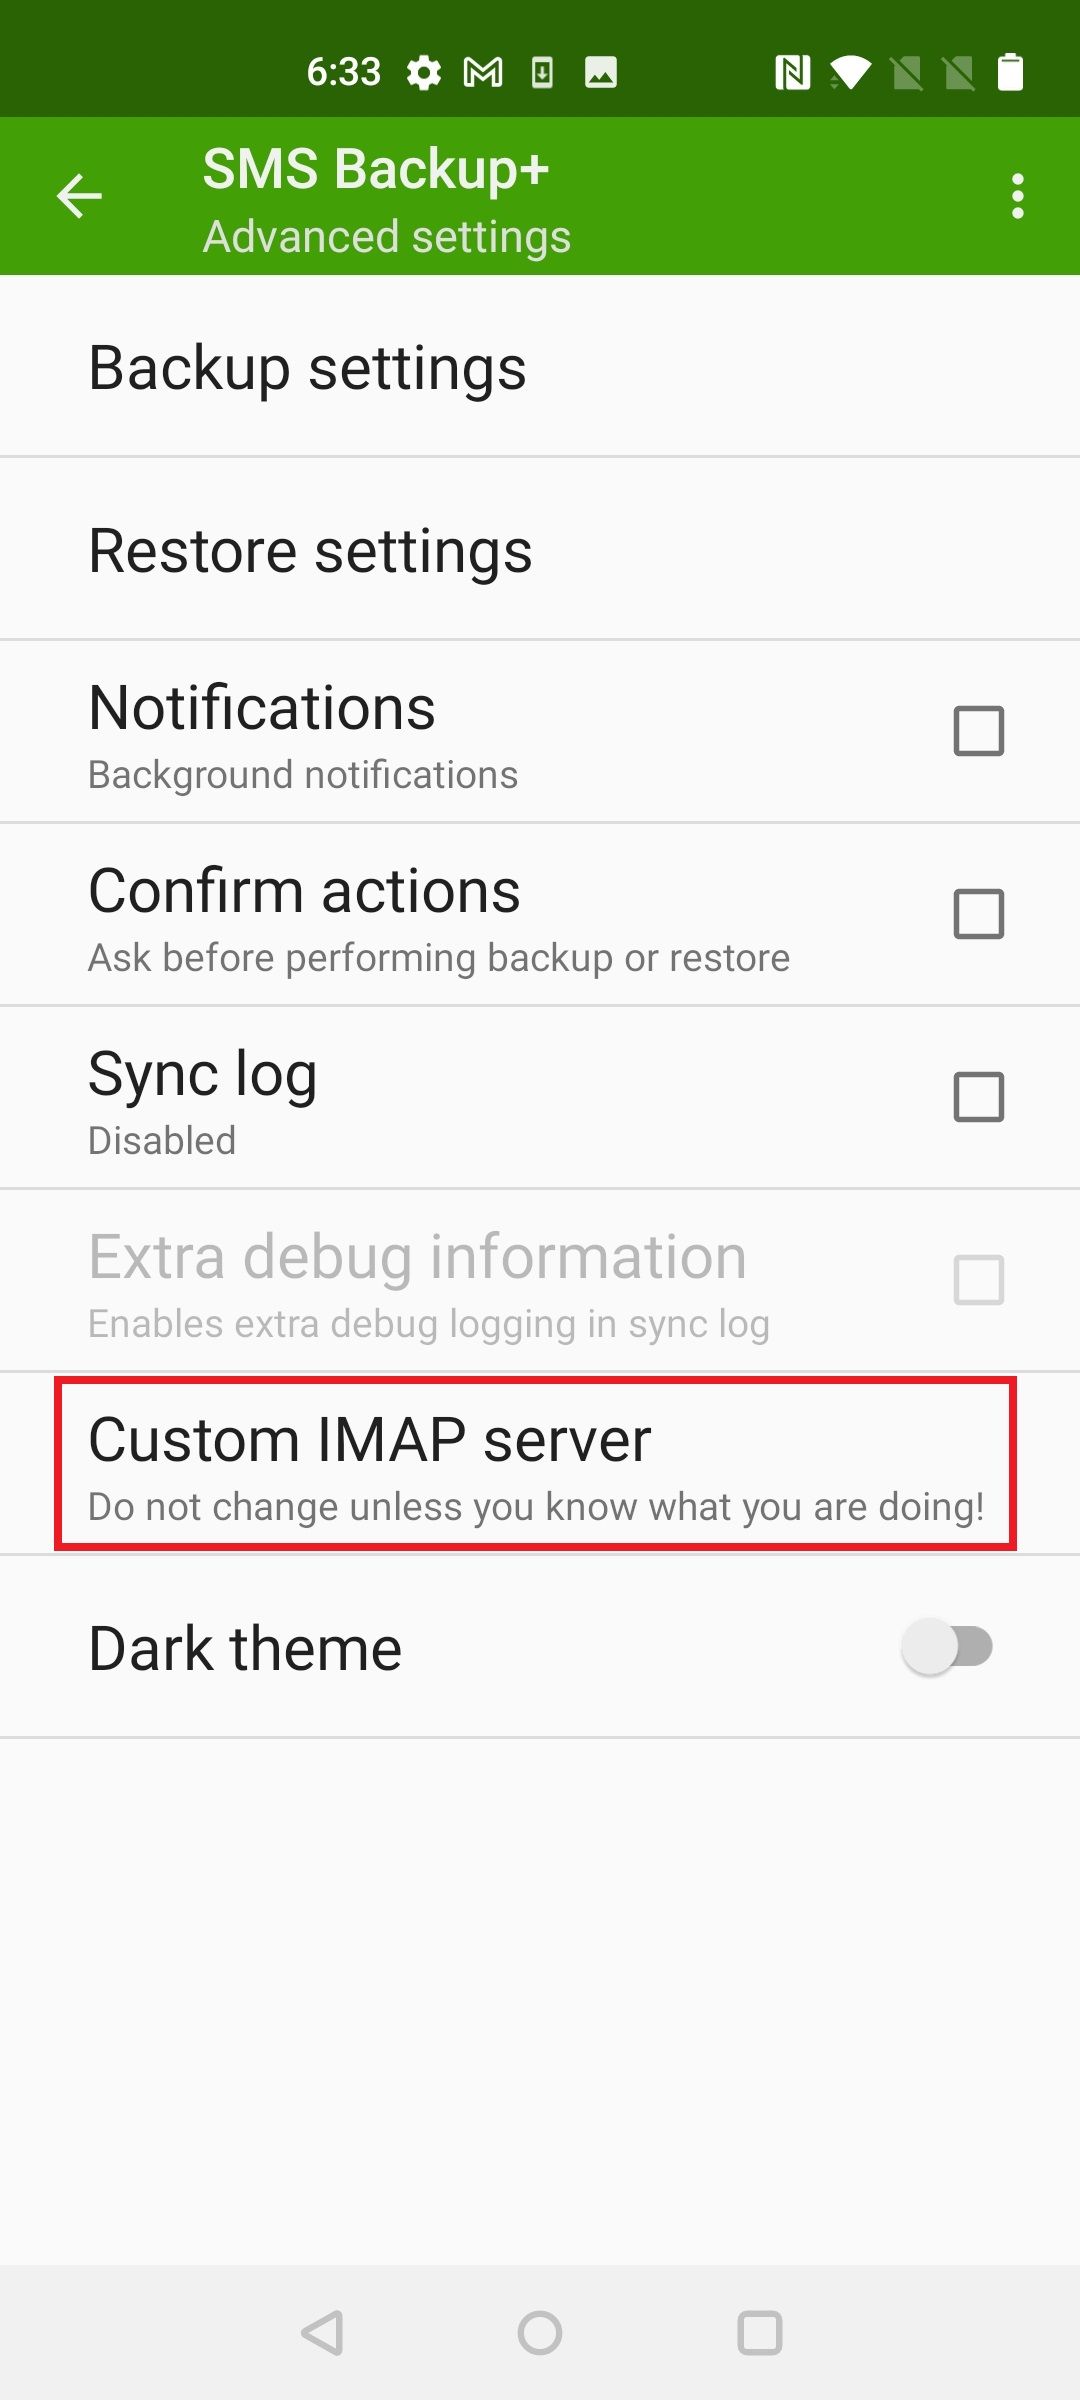 Captura de tela destacando o servidor IMAP personalizado no SMS Backup+